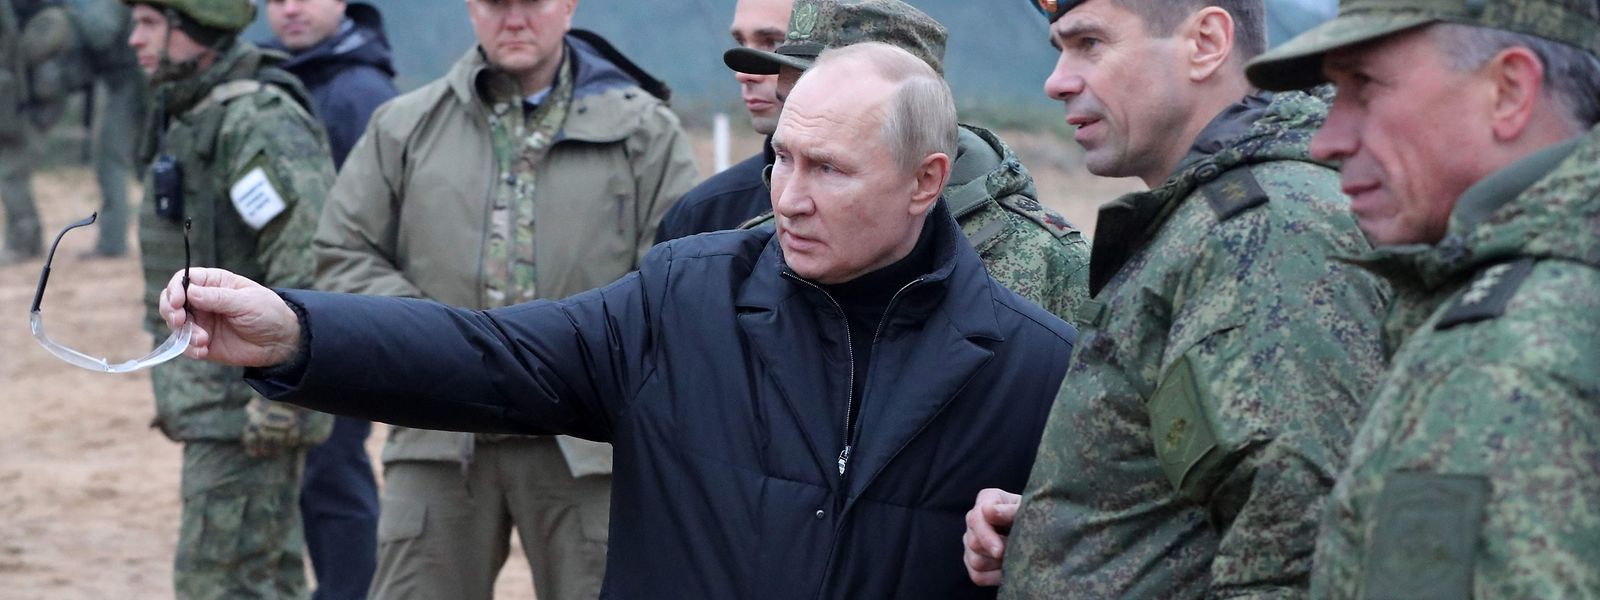 Putin ließ sich die Ausbildung der Truppen eingehend erklären.